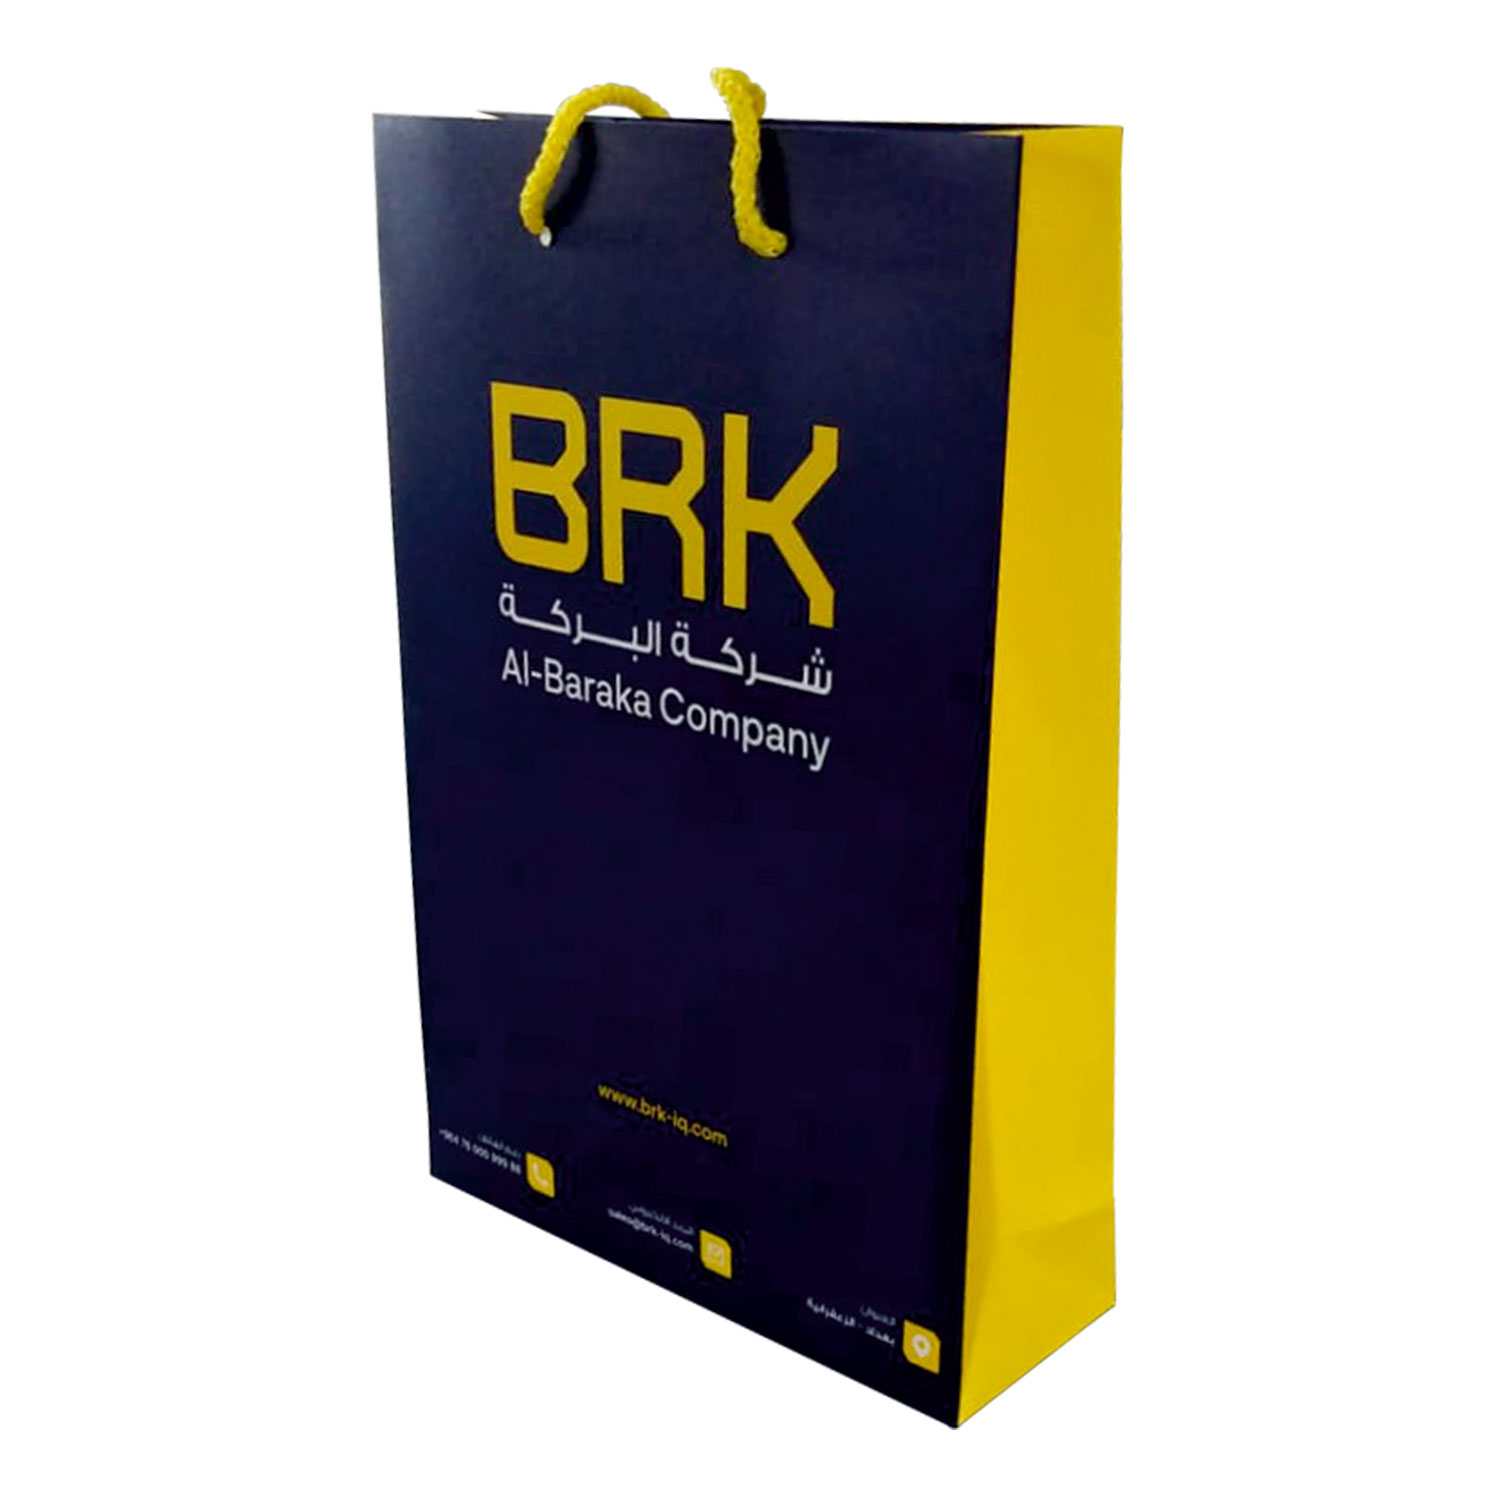 Kurumsal Firmalar İçin Sarı Lacivert Baskılı İplik Saplı Karton Çanta, Ofsetsan Matbaacılık